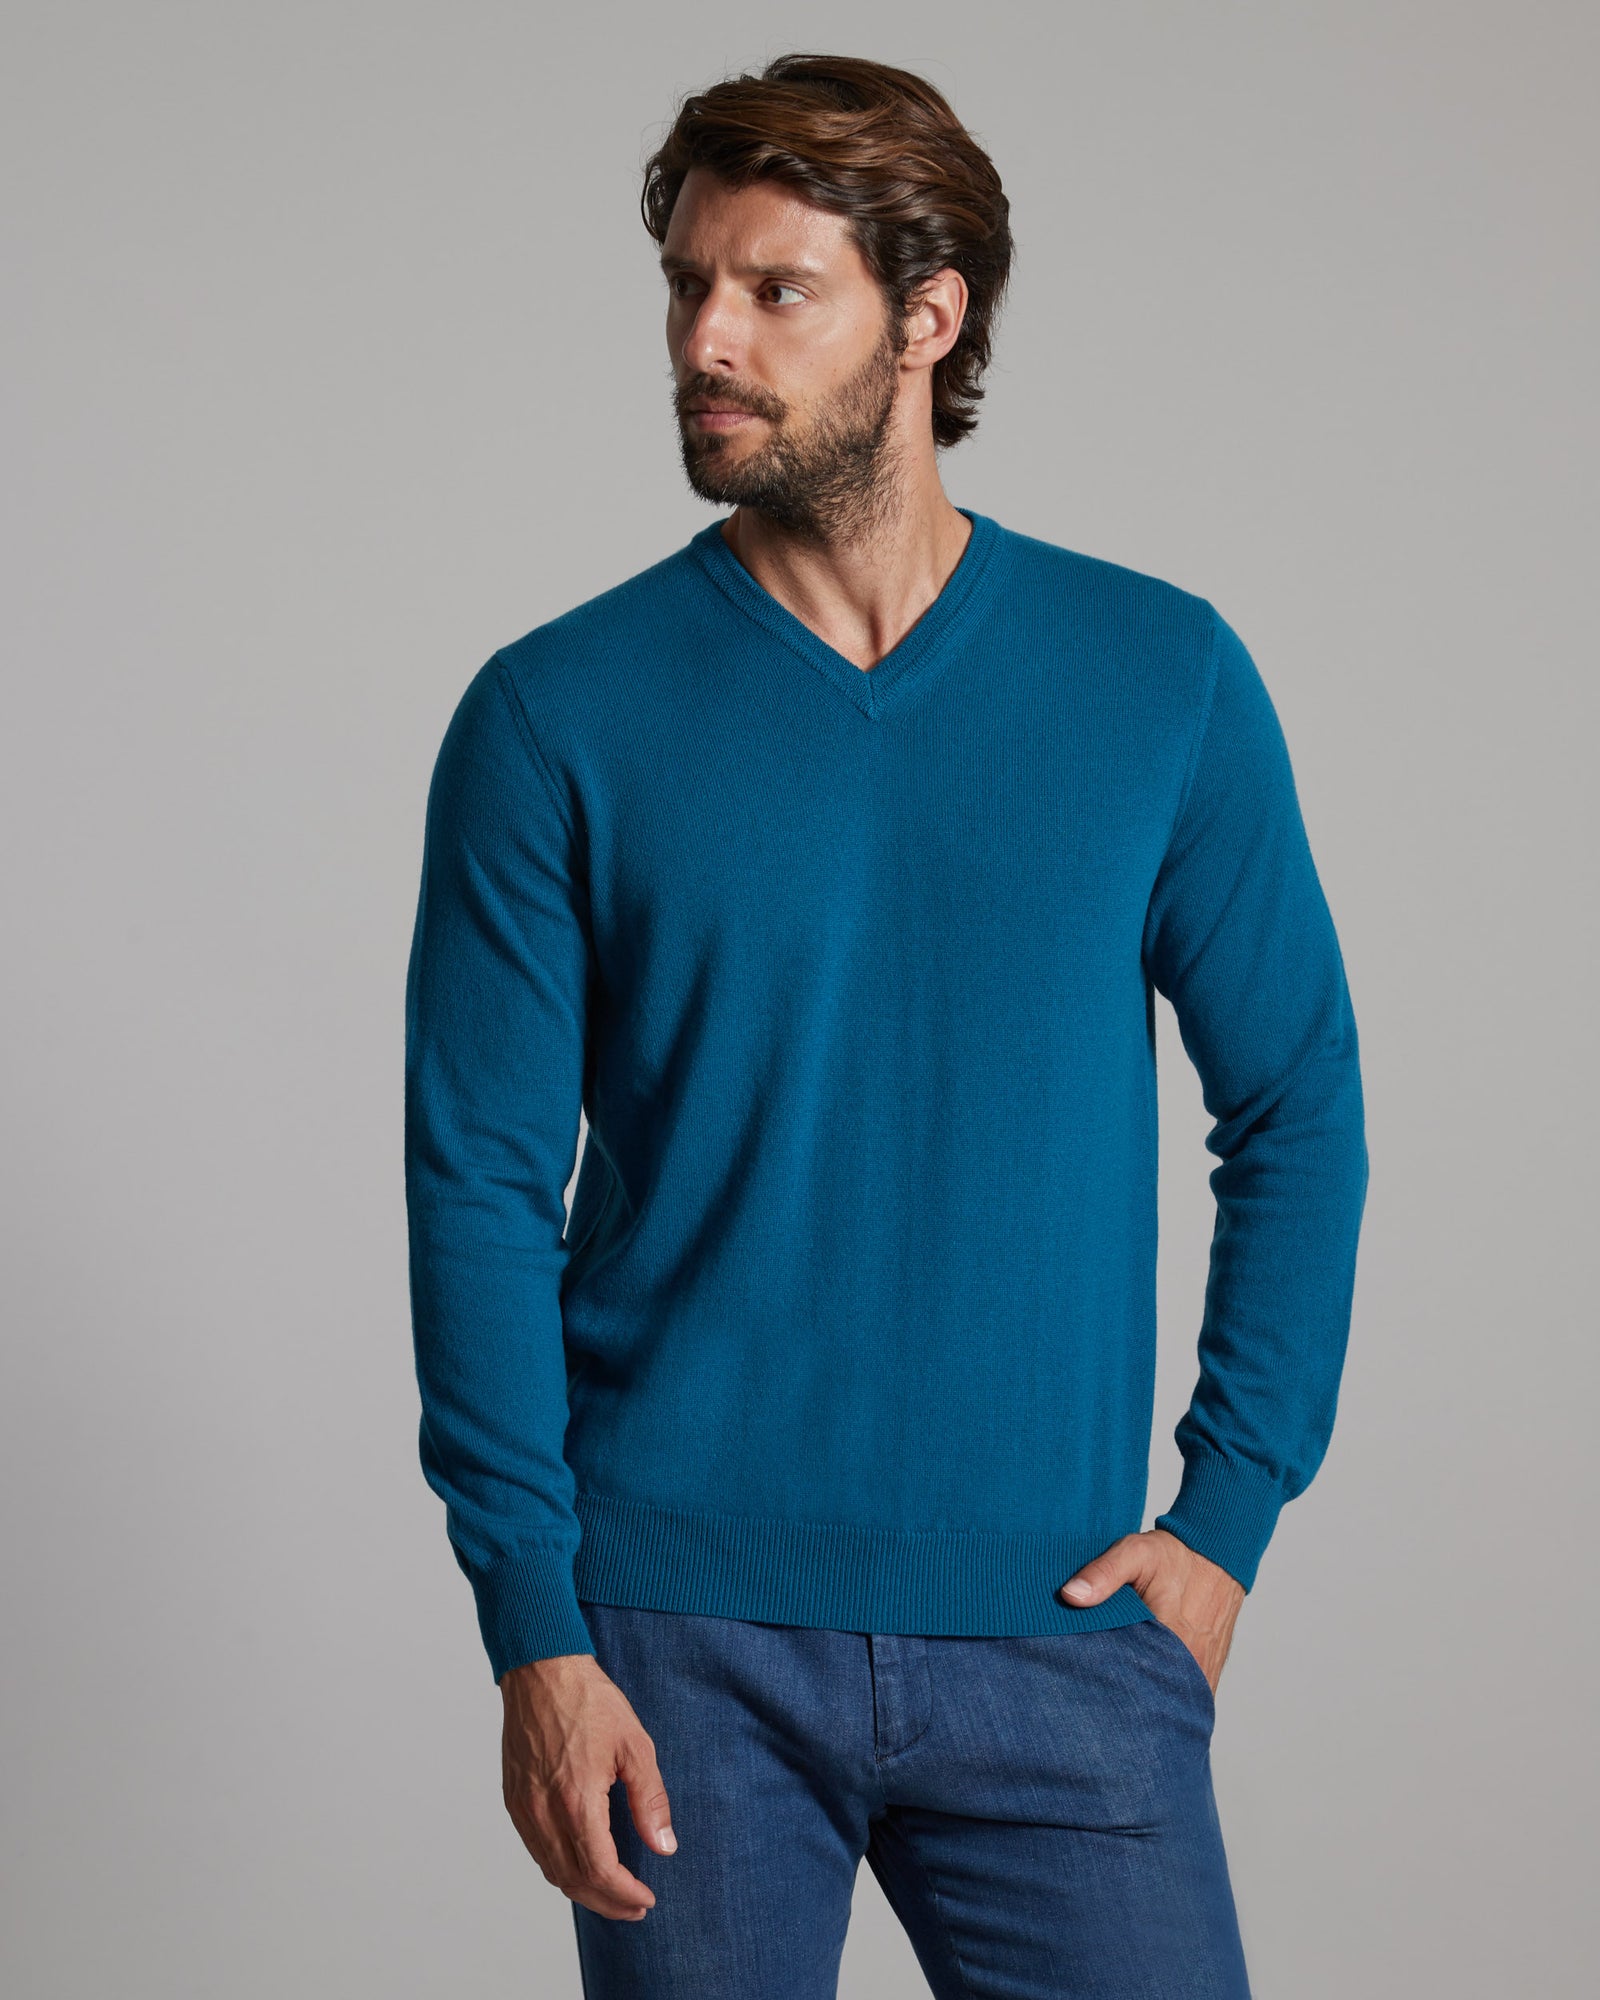 Teal blue kid cashmere V-neck sweater